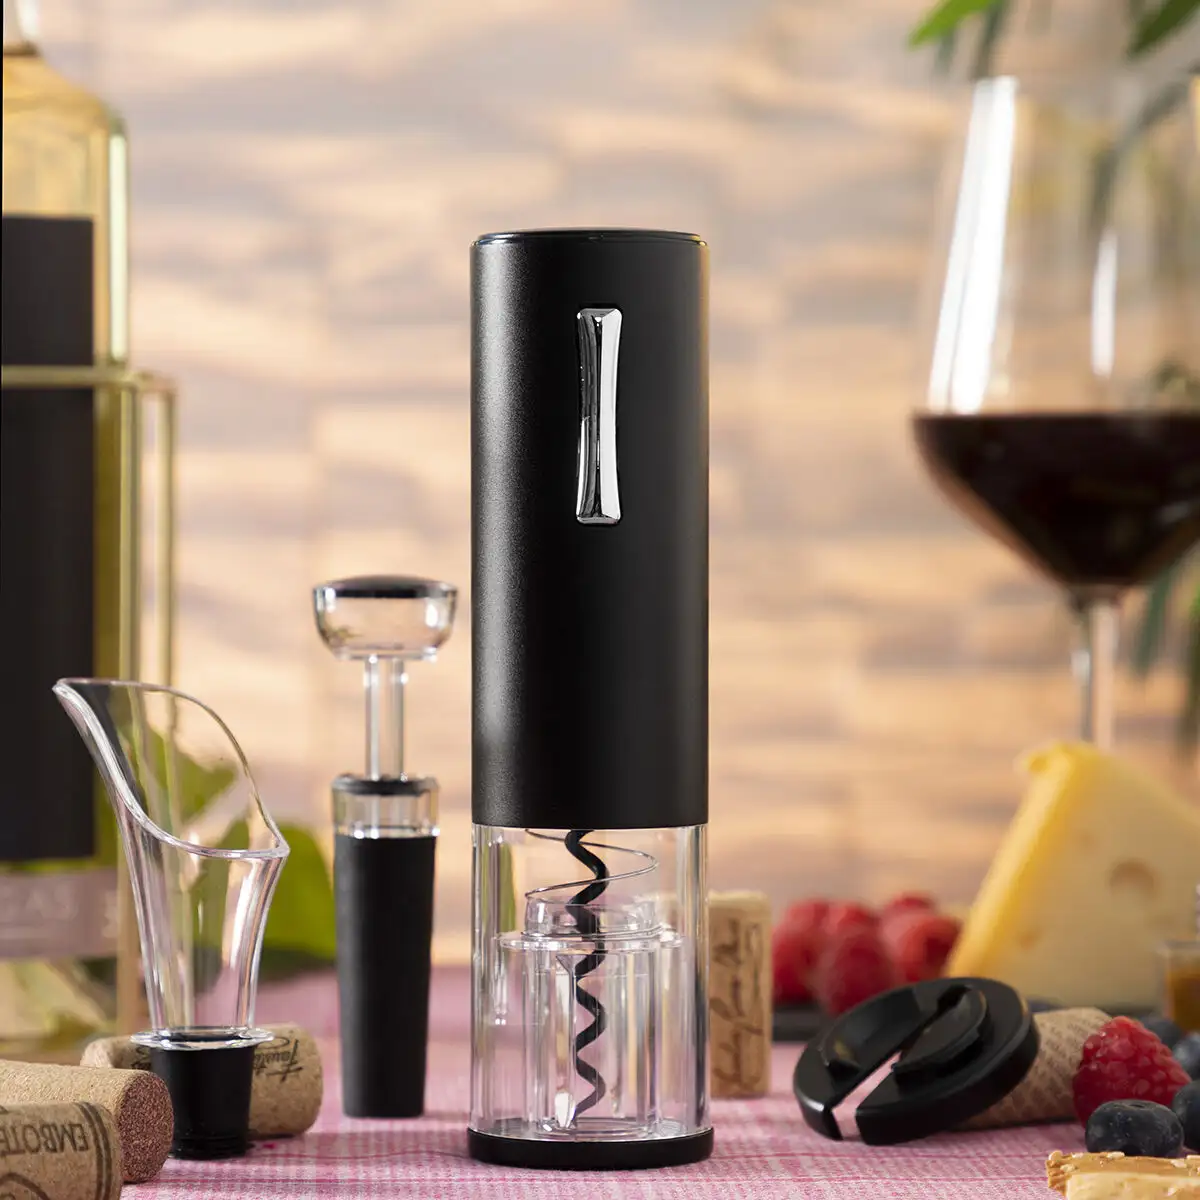 Tire bouchon electrique rechargeable avec accessoires pour le vin corklux innovagoods reconditionne b _5184. DIAYTAR SENEGAL - Là où Choisir est une Affirmation de Style. Naviguez à travers notre boutique en ligne et choisissez des produits qui vous distinguent et vous valorisent.